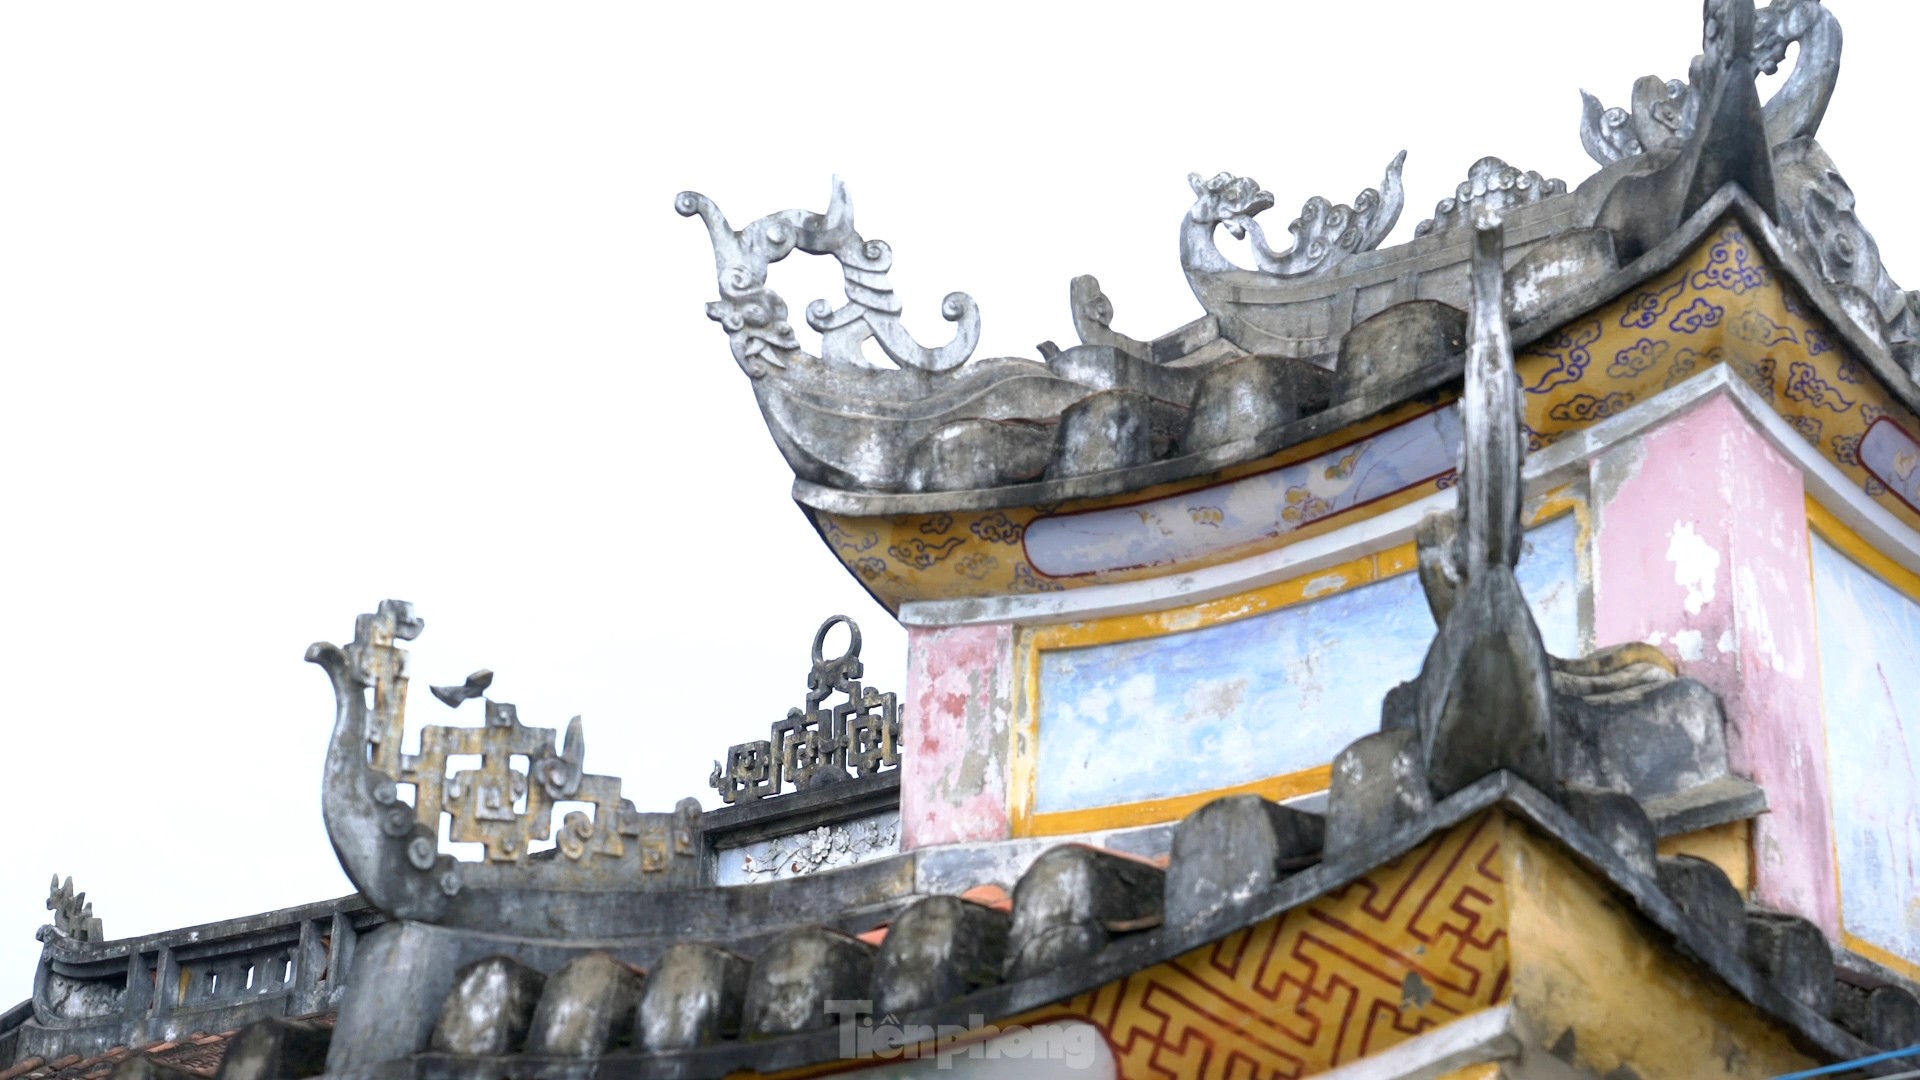 Chùa Hải Tạng - ngôi cổ tự linh thiêng gần 300 năm tuổi, điểm đến tâm linh ấn tượng với '4 không' - Ảnh 10.